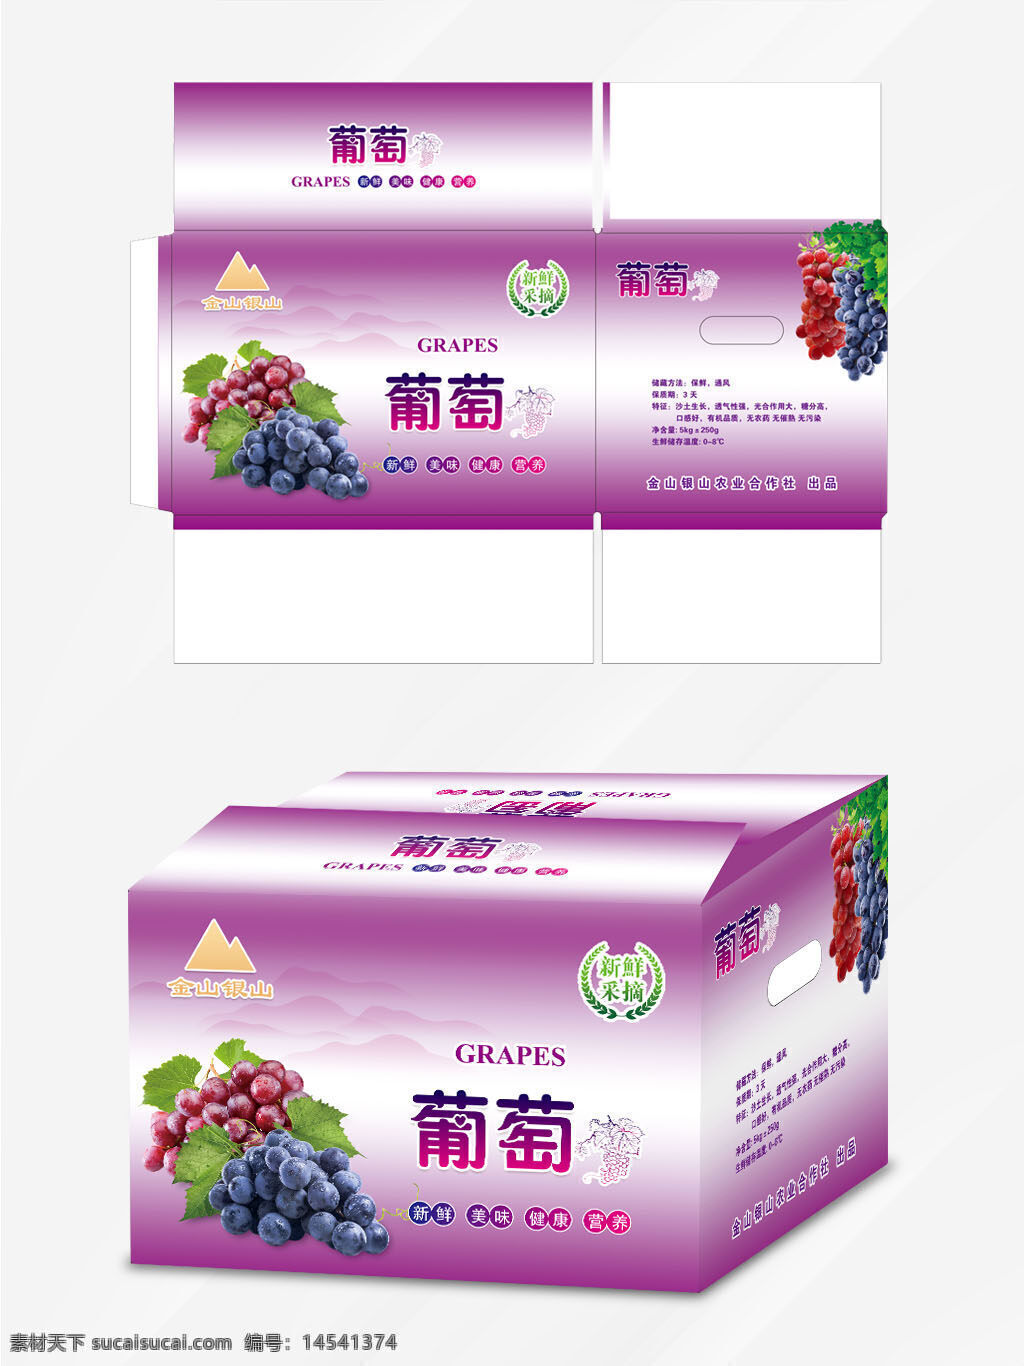 葡萄对口箱 葡萄包装 葡萄 紫葡萄箱 葡萄包装箱 新鲜葡萄